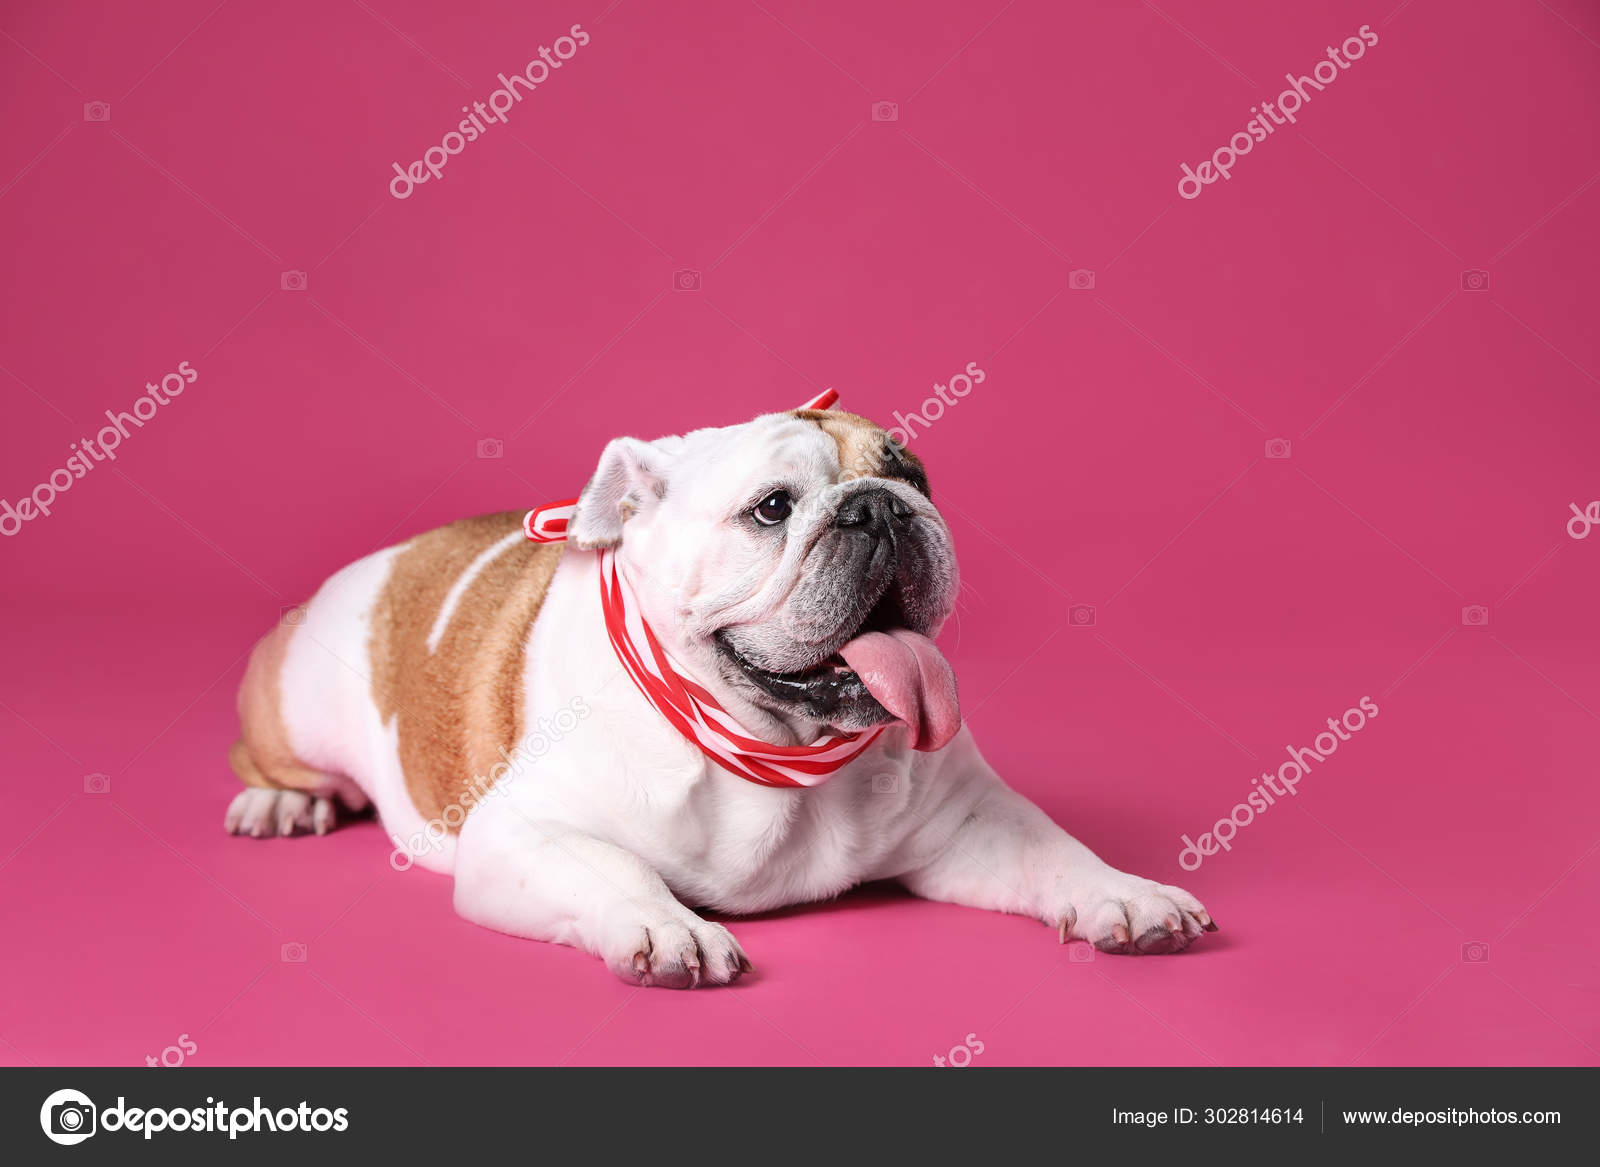 可爱的有趣的英国斗牛犬与粉红色背景的丝带 图库照片 C Liudmilachernetska Gmail Com